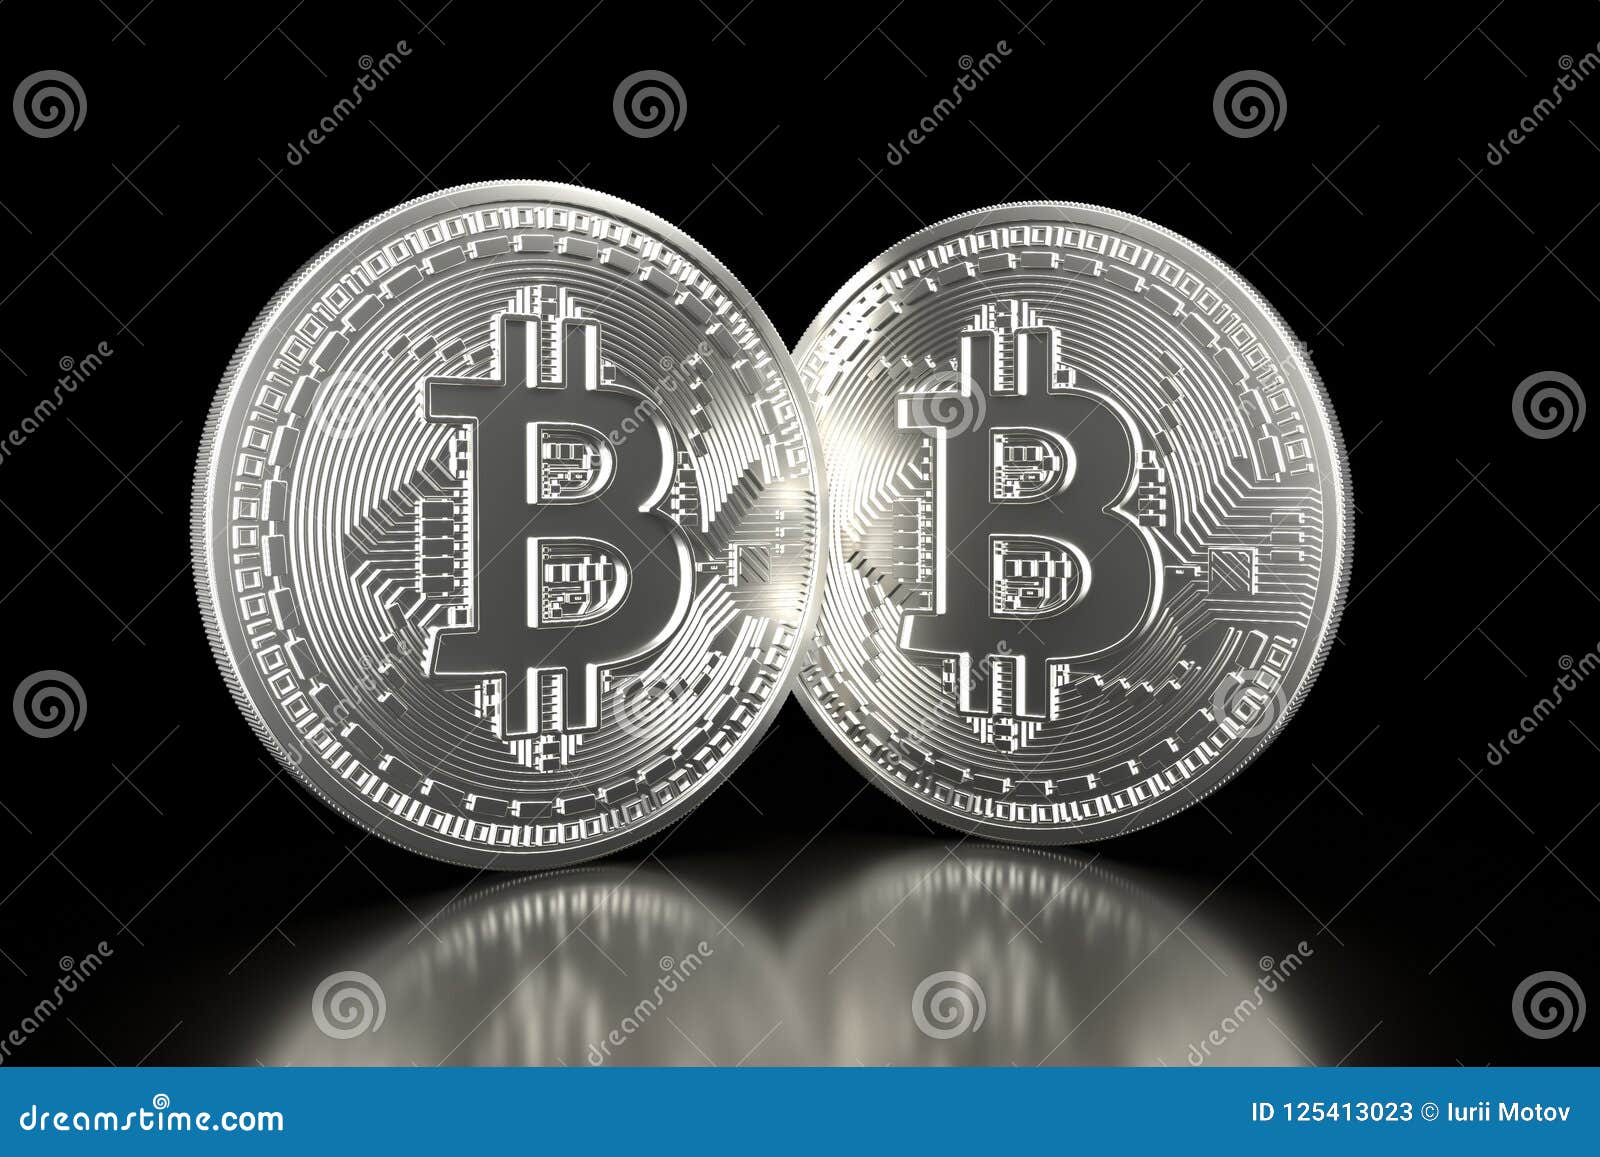 kiek yra 0 03 bitcoin naira uždirbti pinigus perkant ir parduodant bitcoin